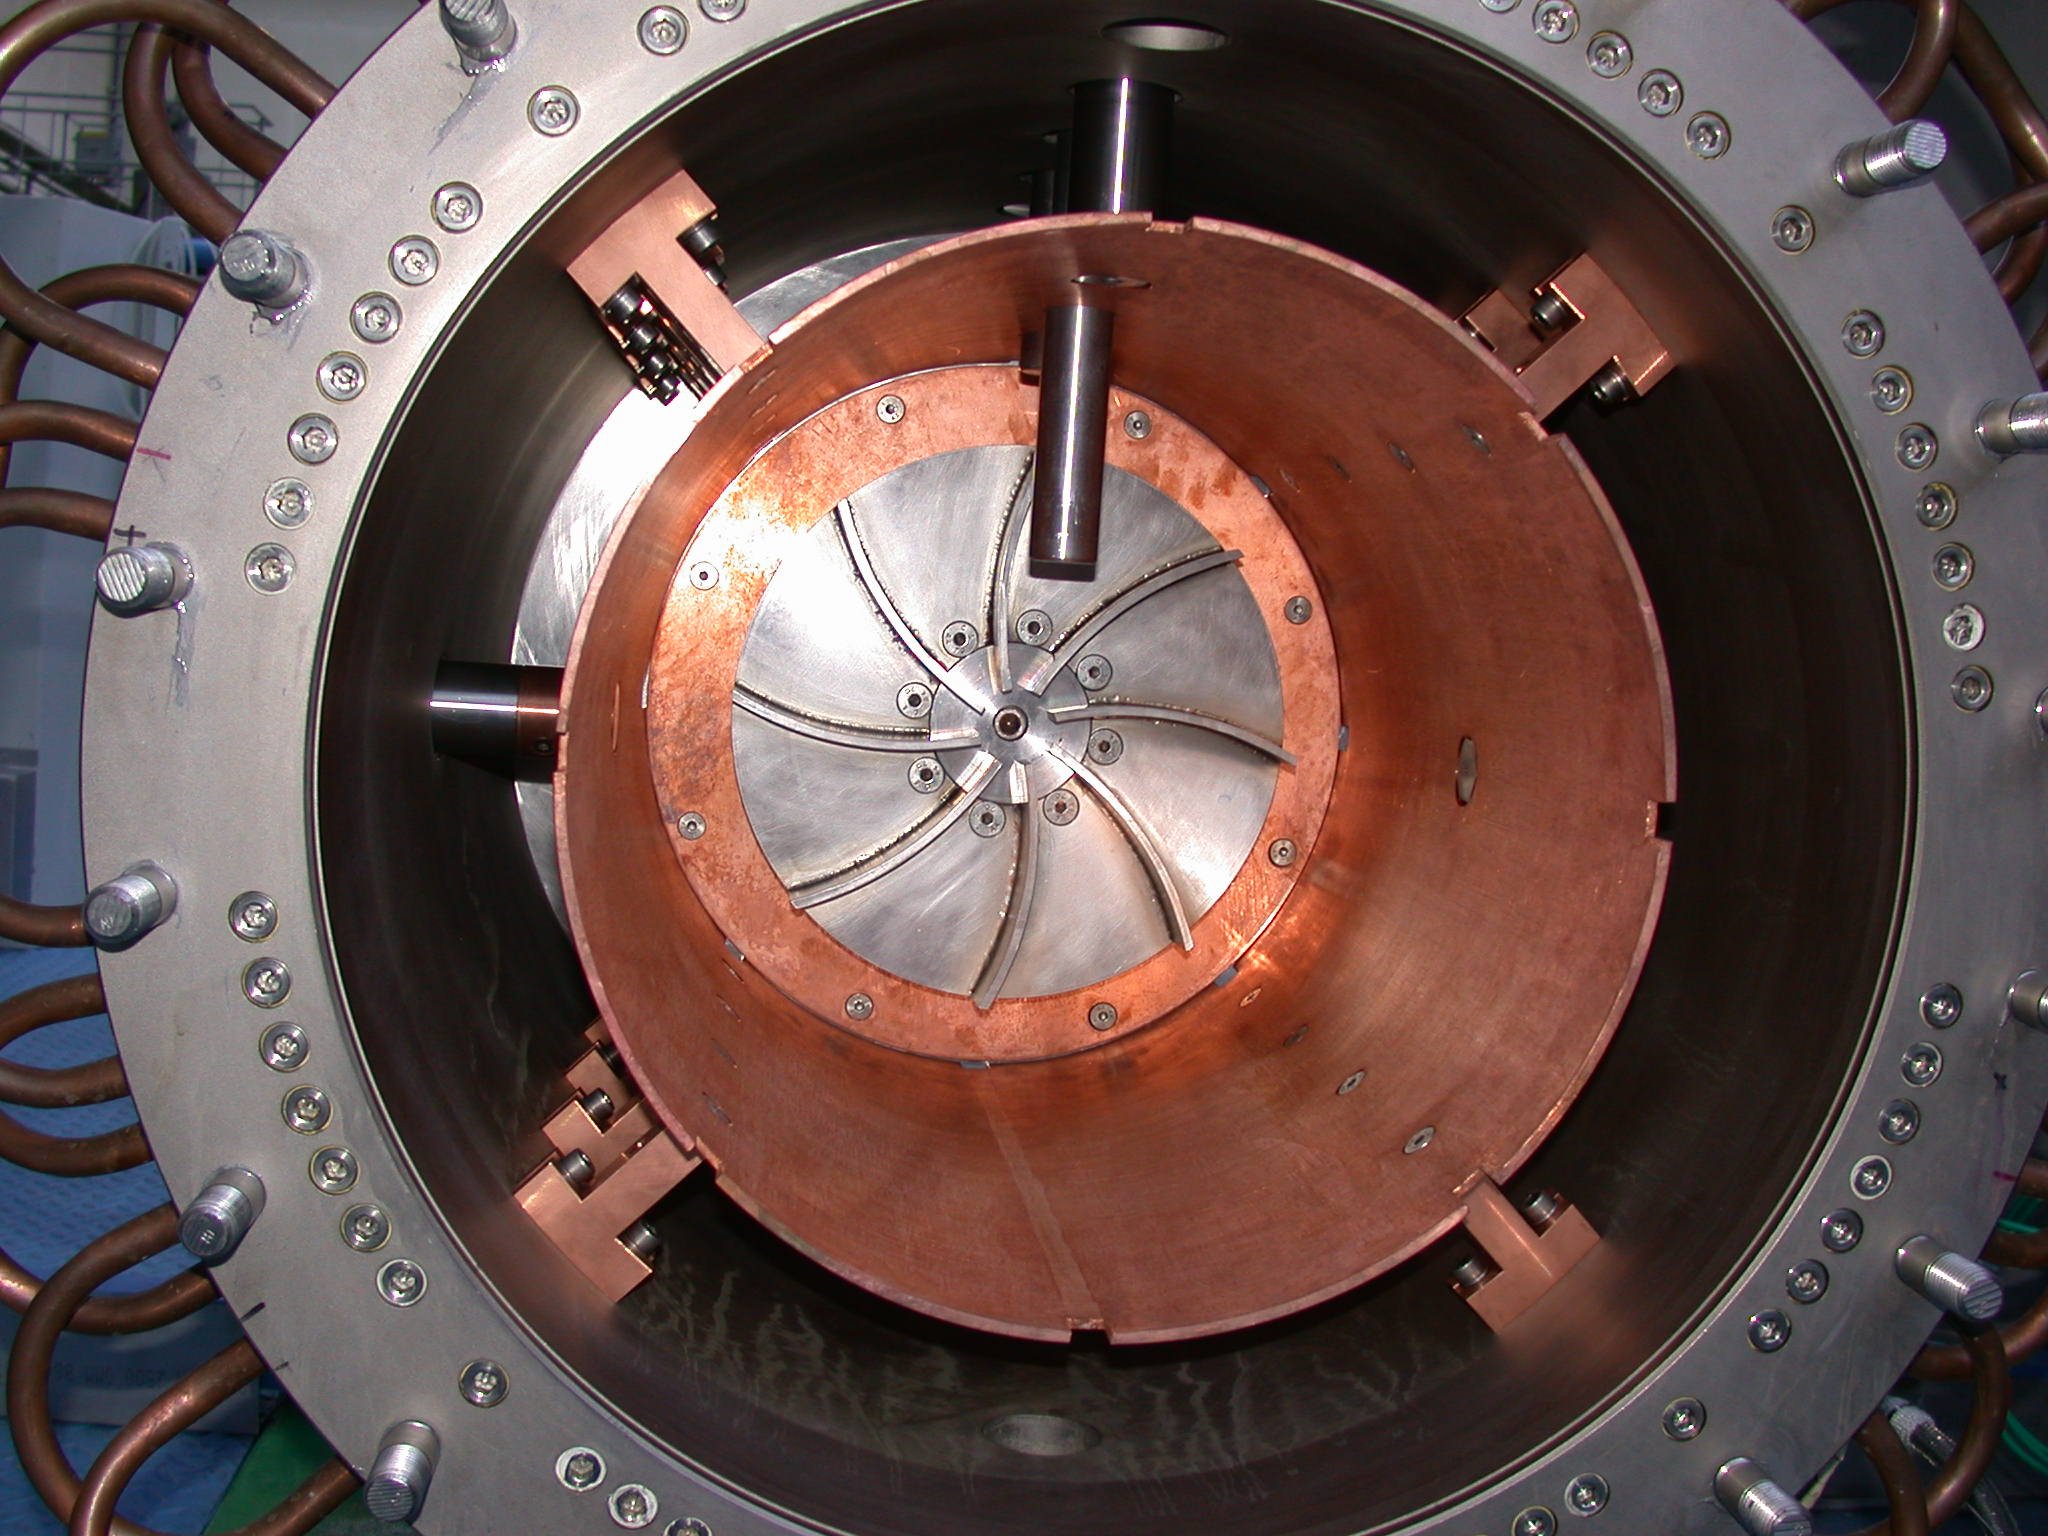 دانلود تصویر جدید مربوط به میدان مغناطیسی و چرخ دنده 